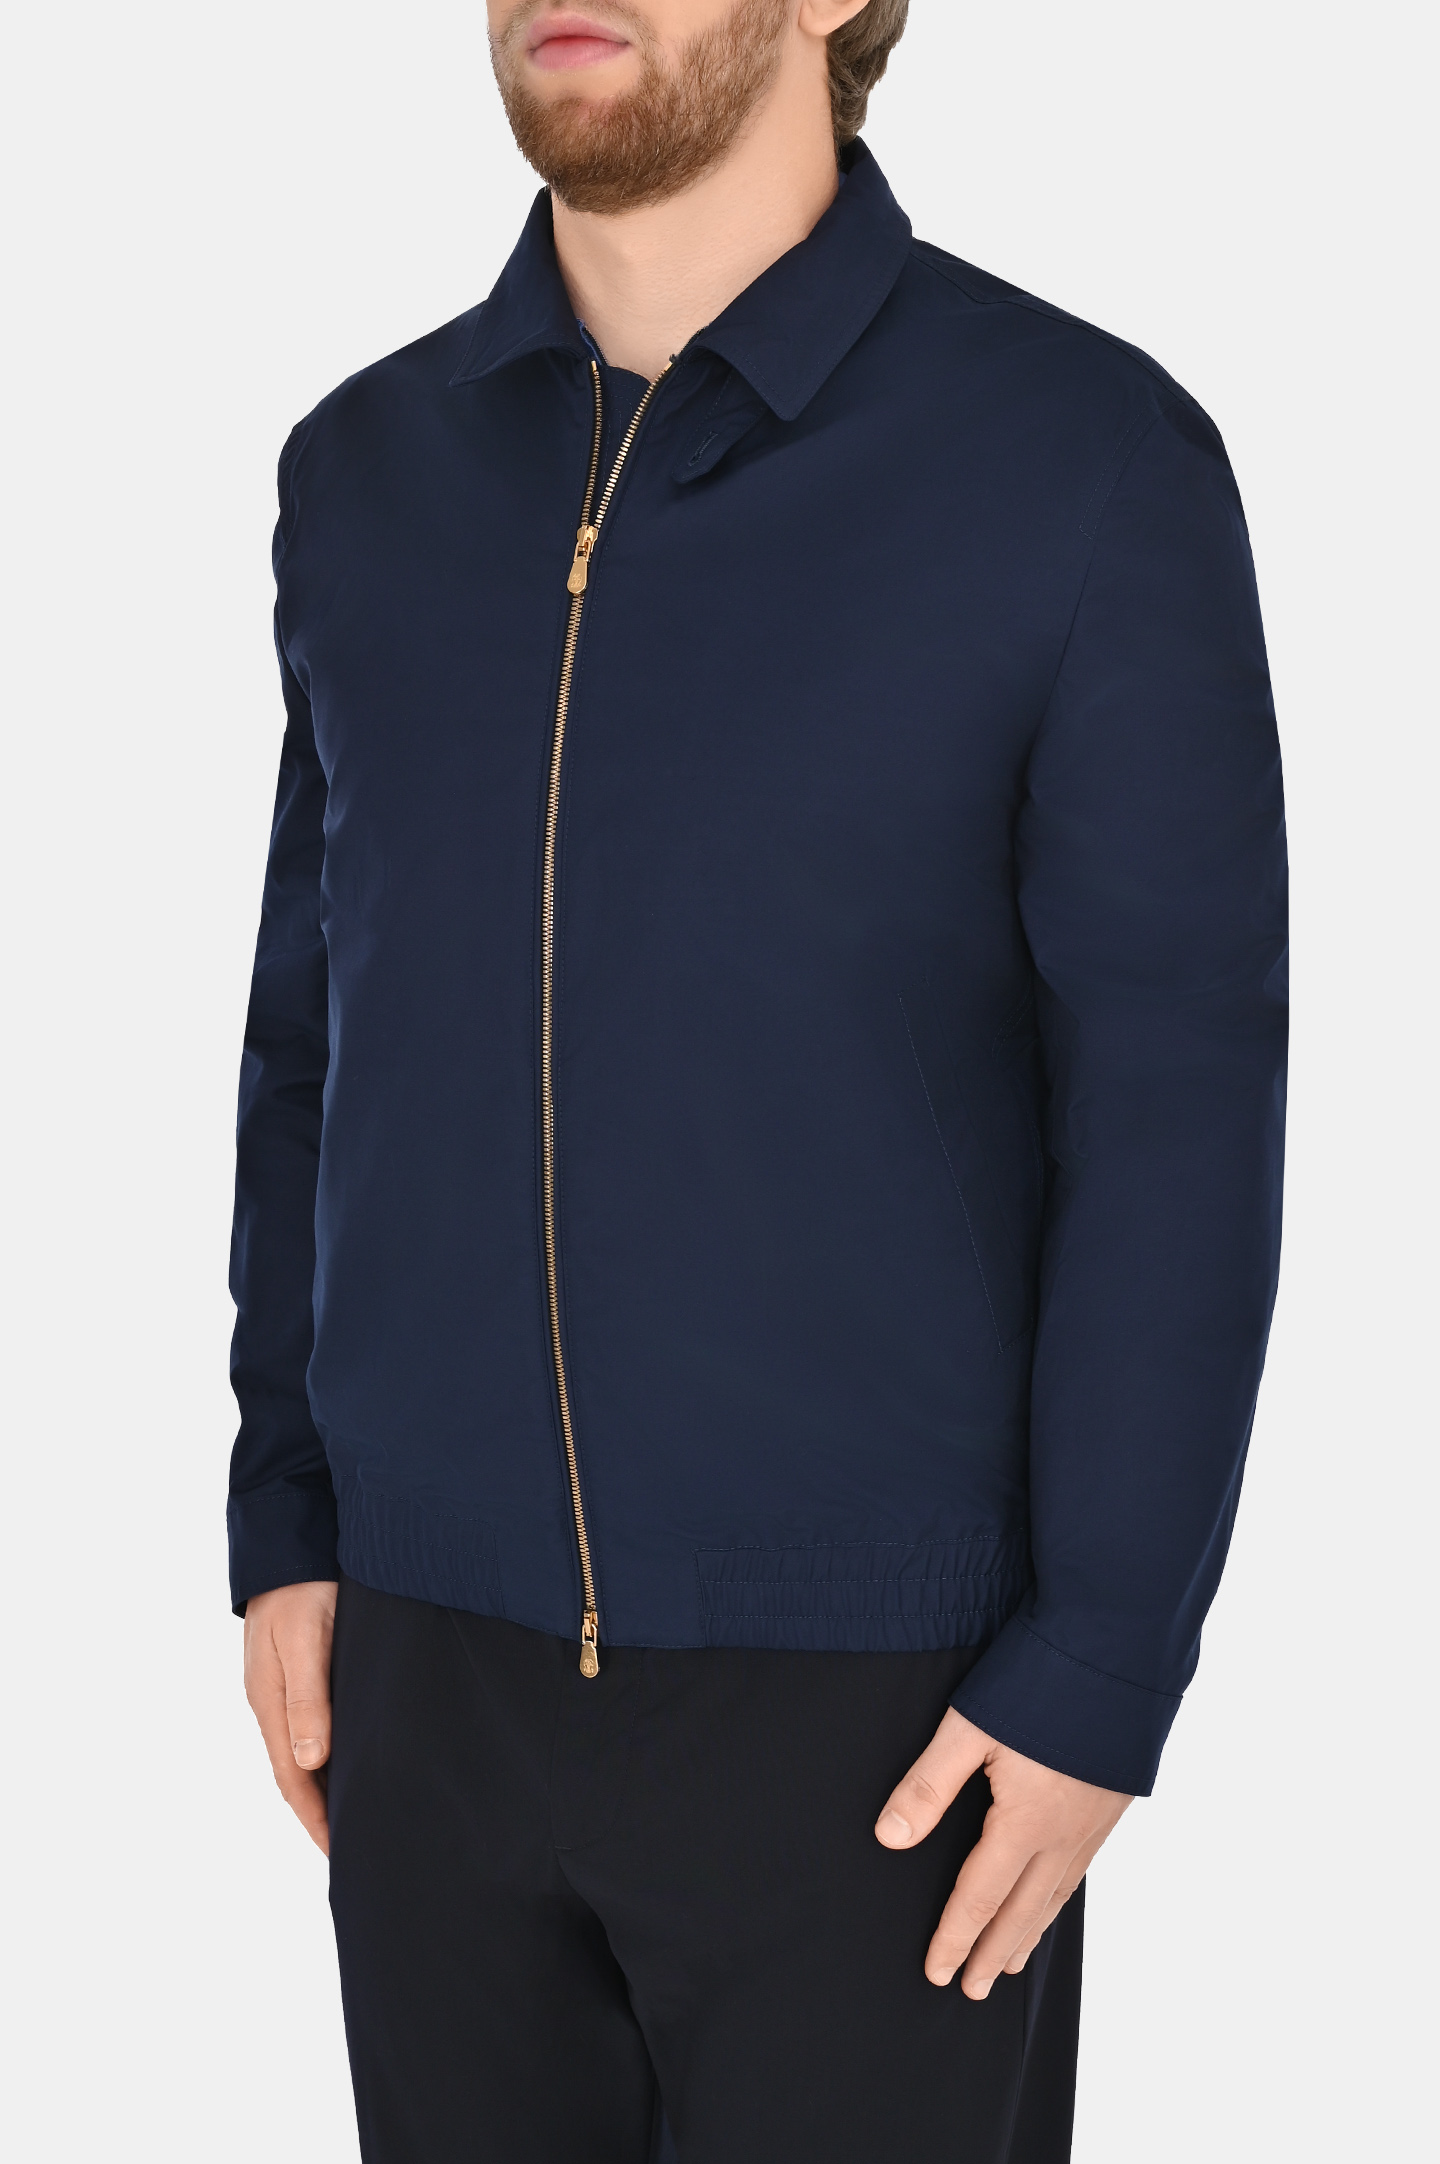 Легкая классическая куртка на молнии BRUNELLO  CUCINELLI MB4026205, цвет: Темно-синий, Мужской